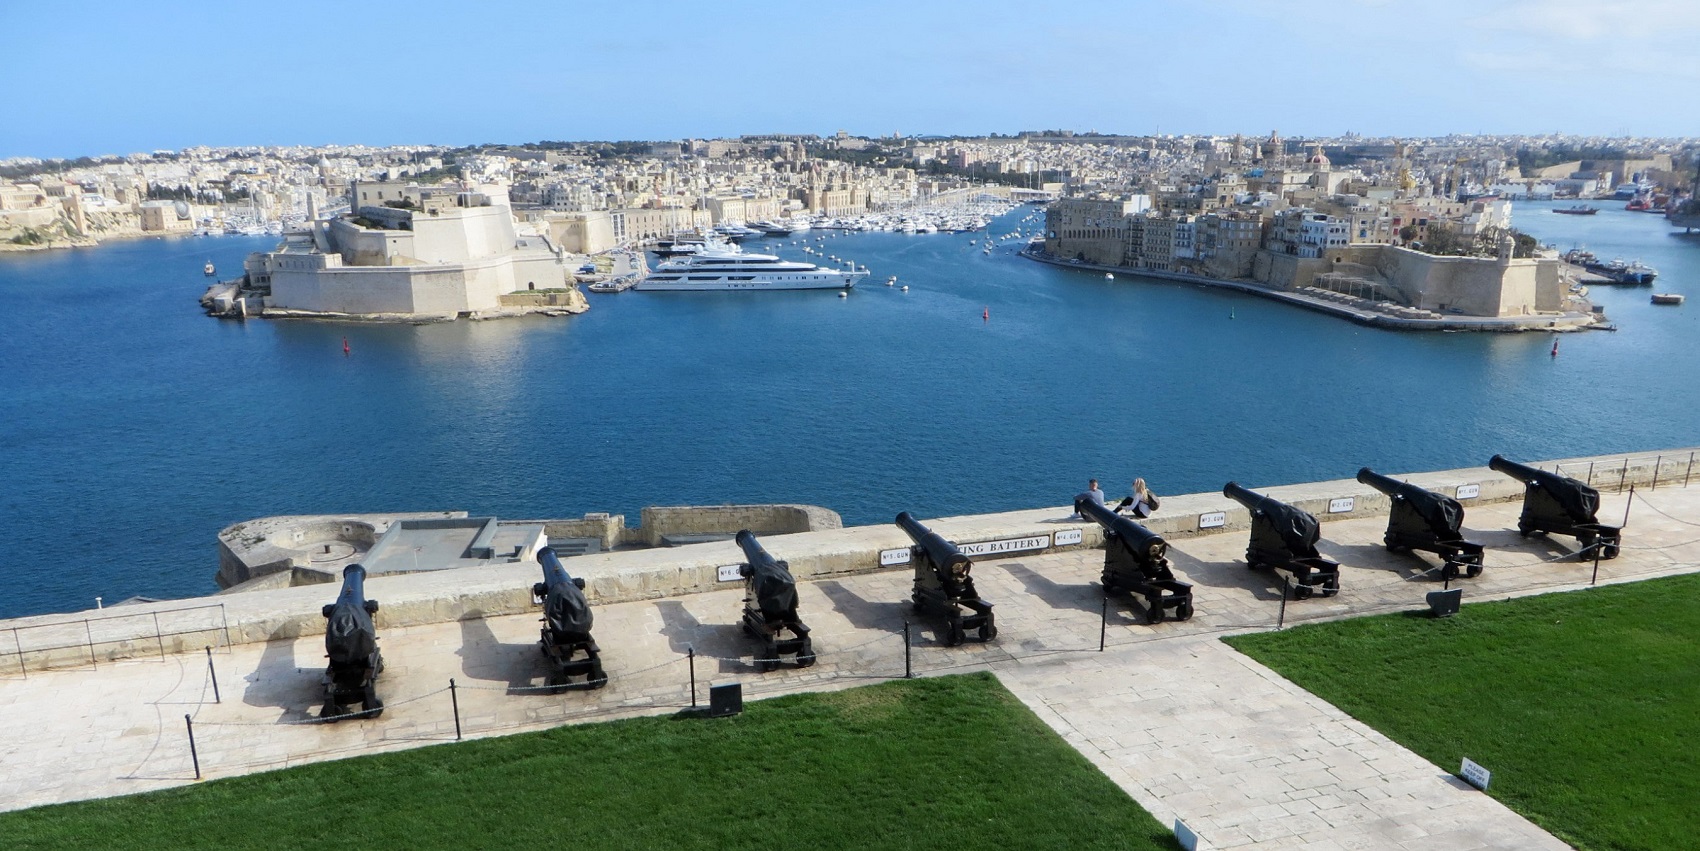 Malta Valletta Historical